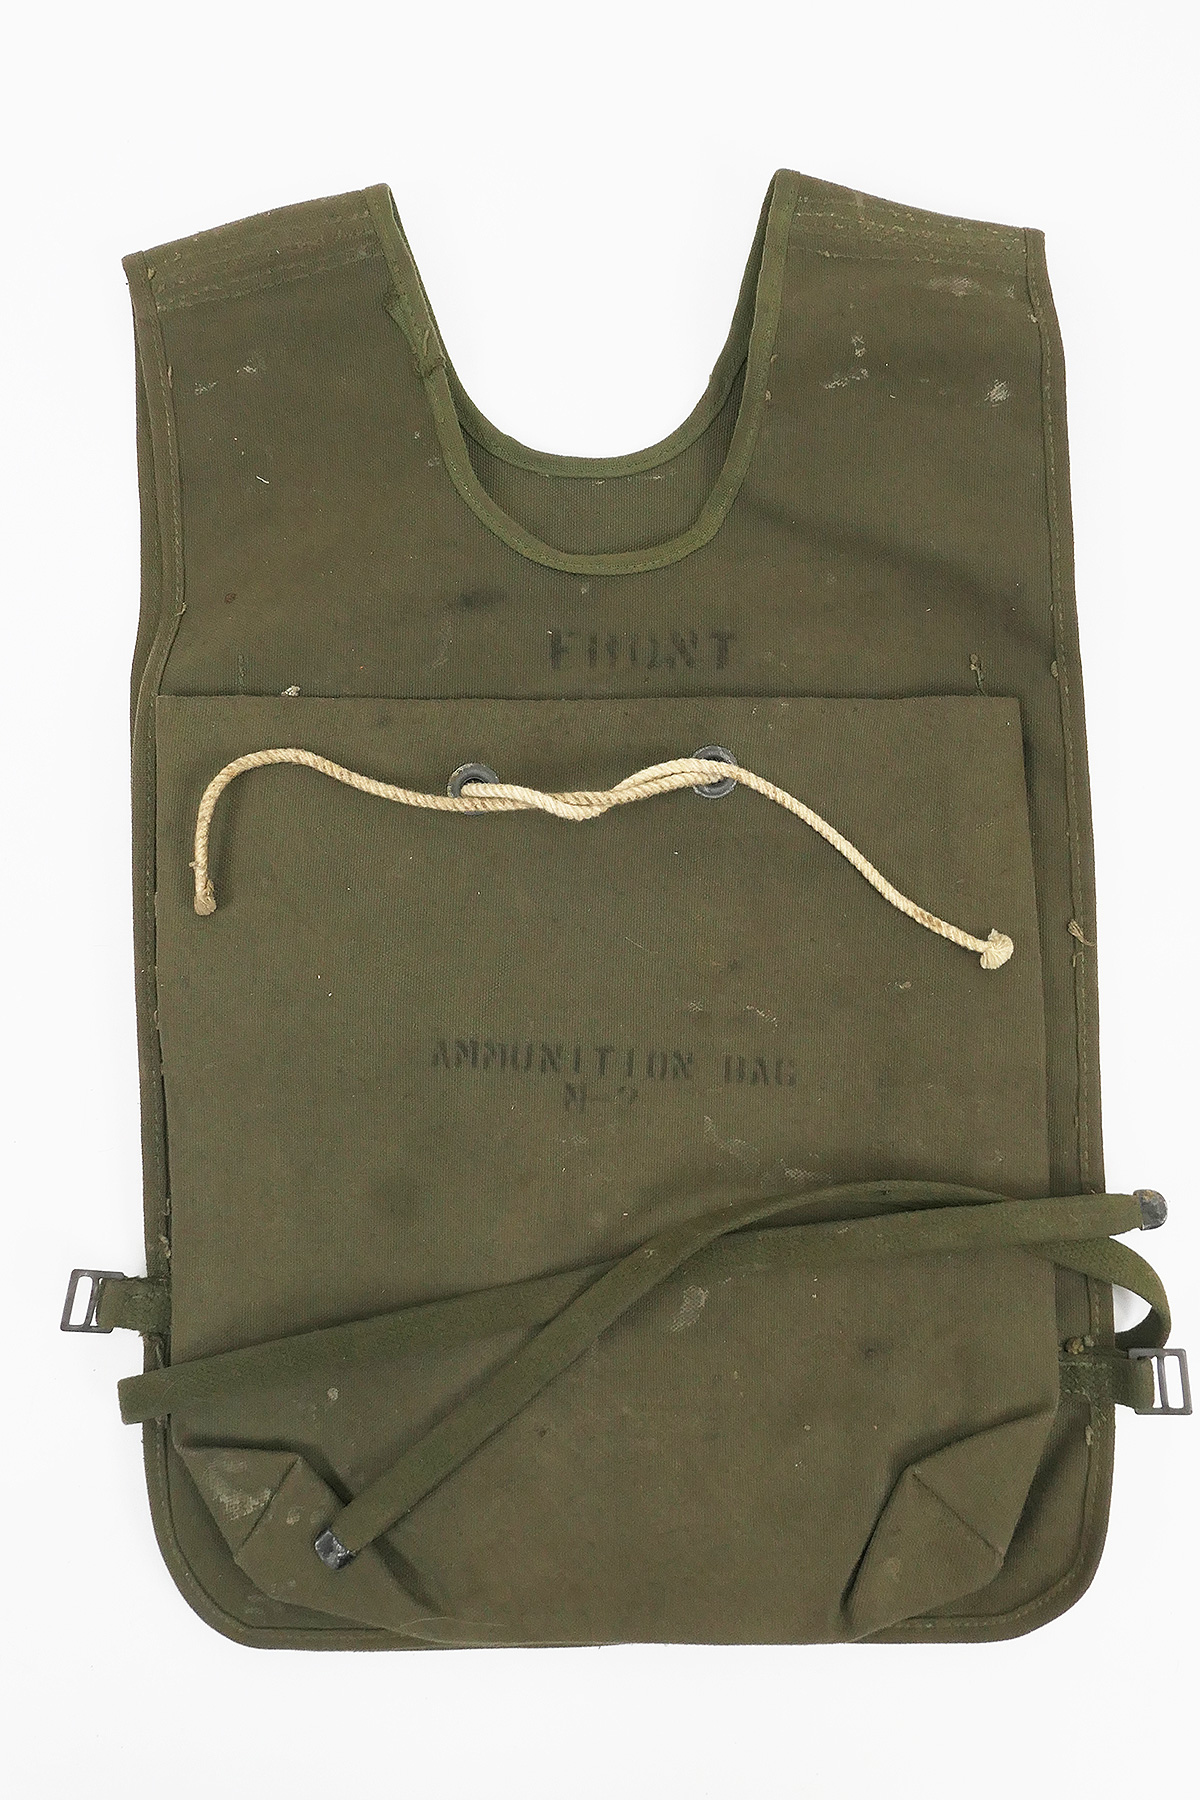 40's WWII U.S.ARMY Ammunition Bag M2 odmalihnogu.org